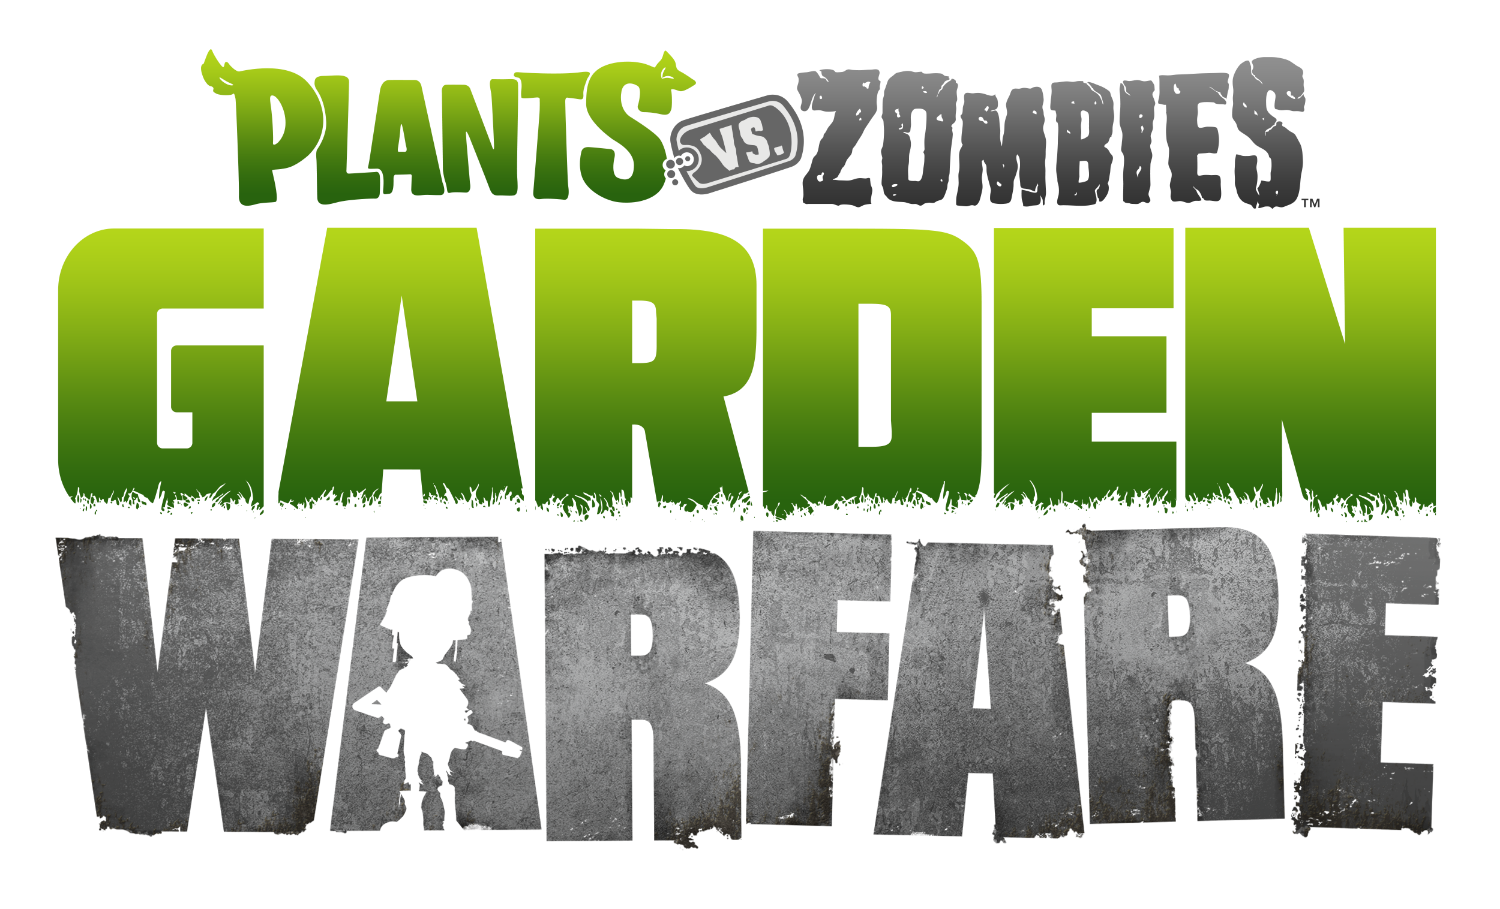 Jogo Plants vs Zombies: Garden Warfare Xbox 360 Popcap com o Melhor Preço é  no Zoom